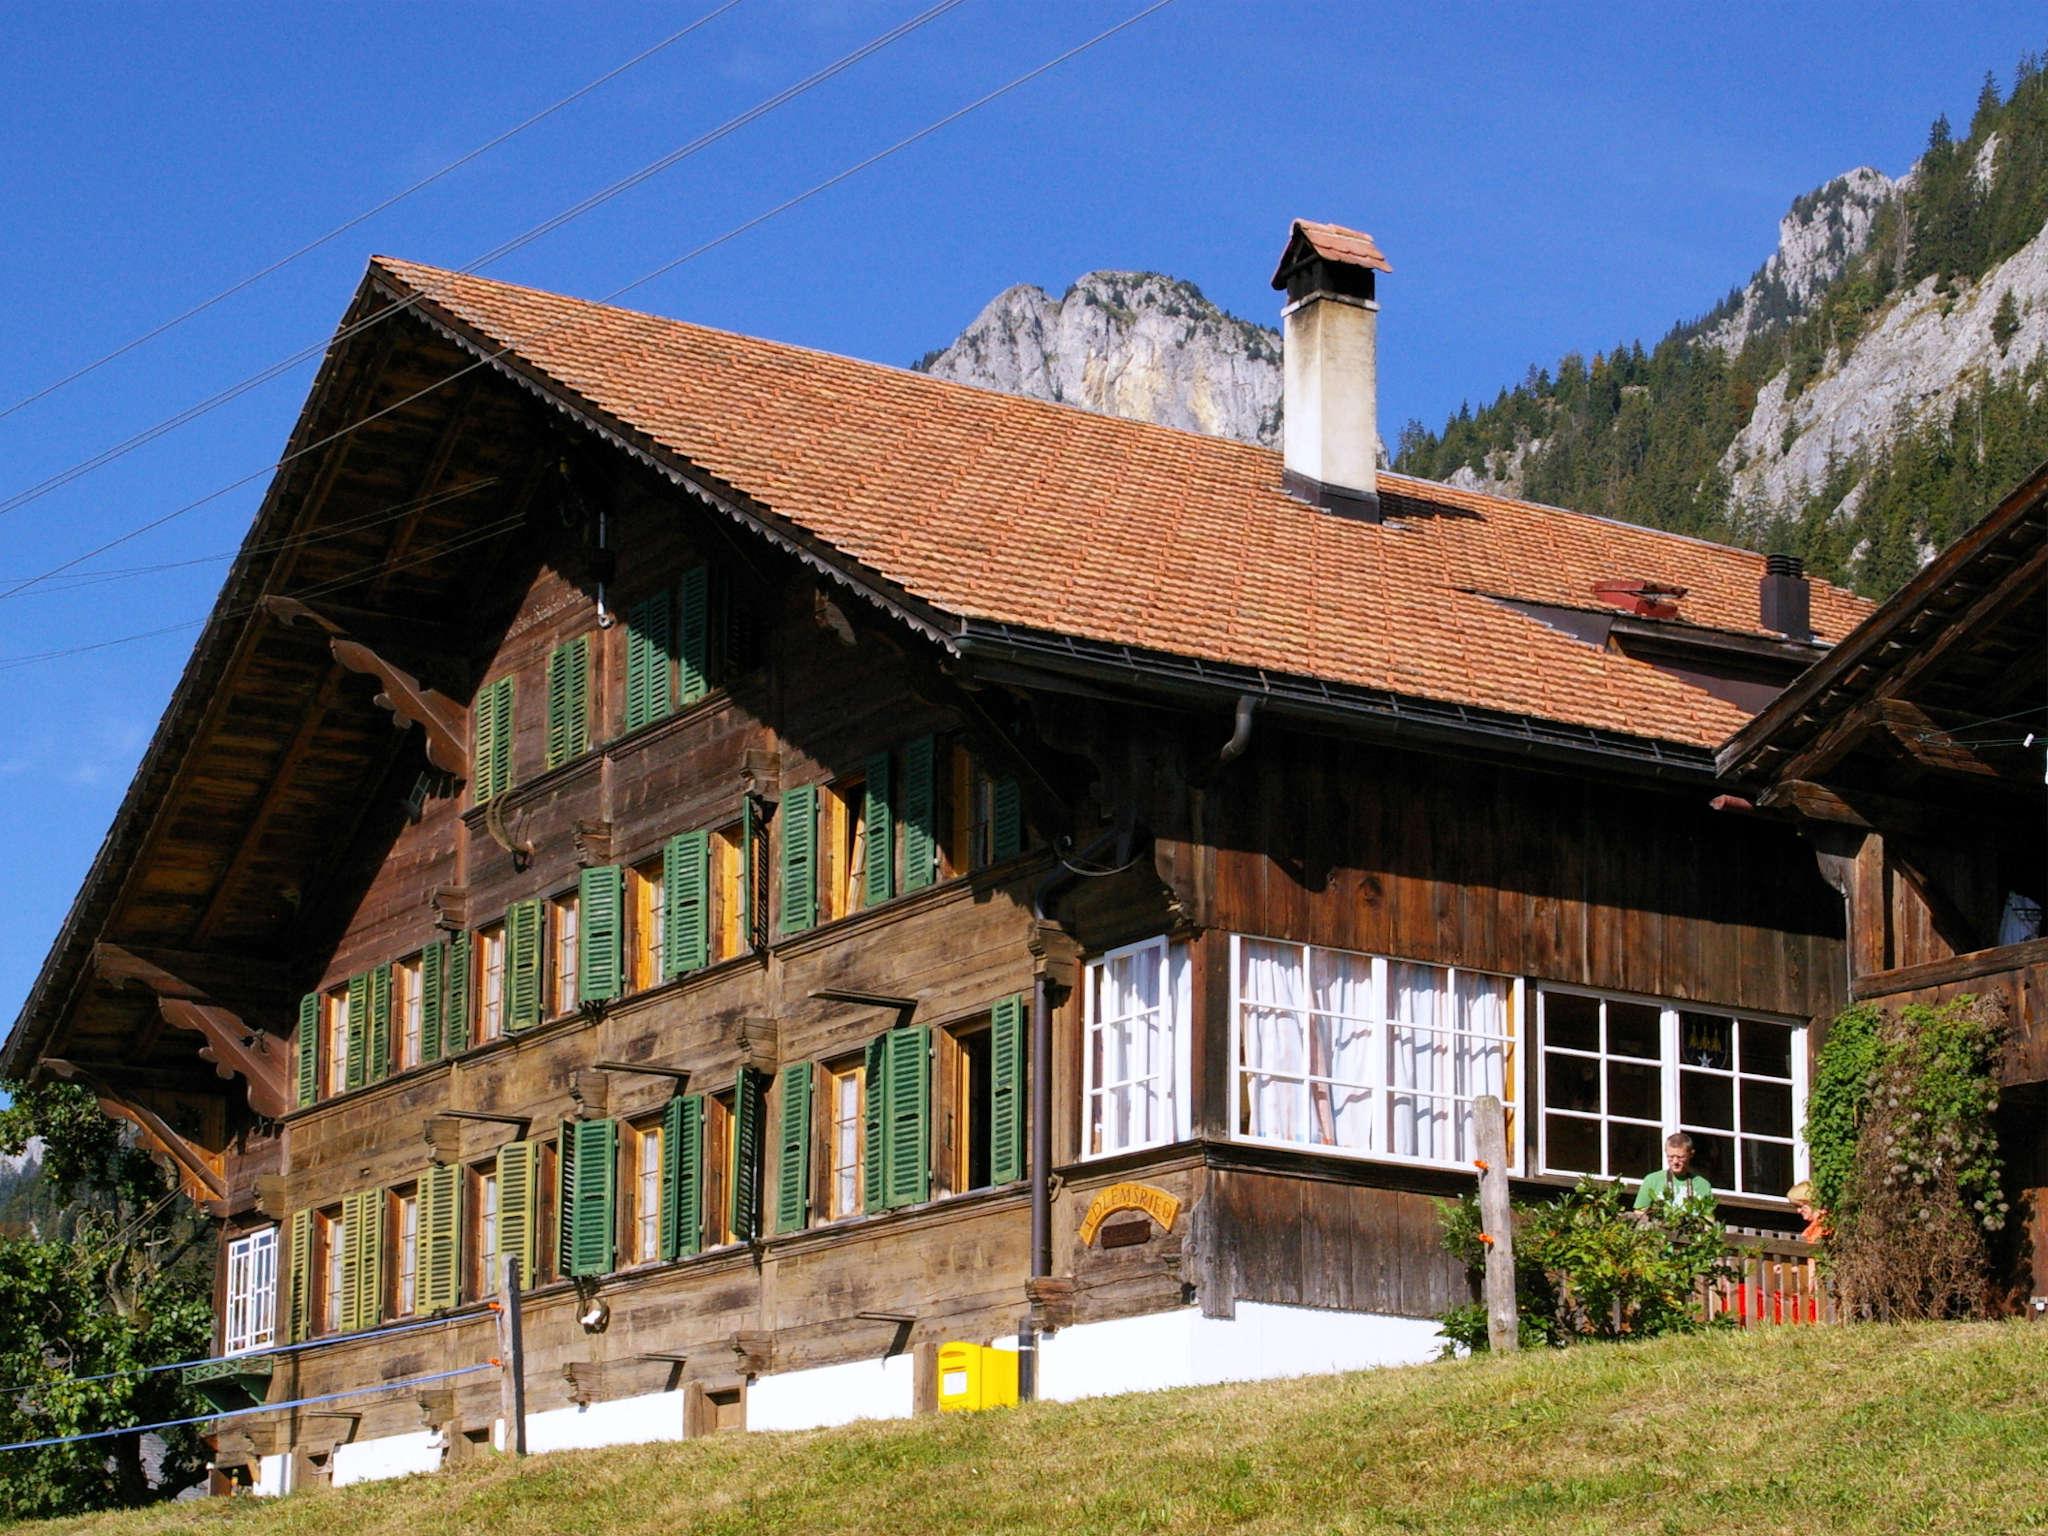 Adlemsried 10-Bett-Wohnung Ferienwohnung in der Schweiz